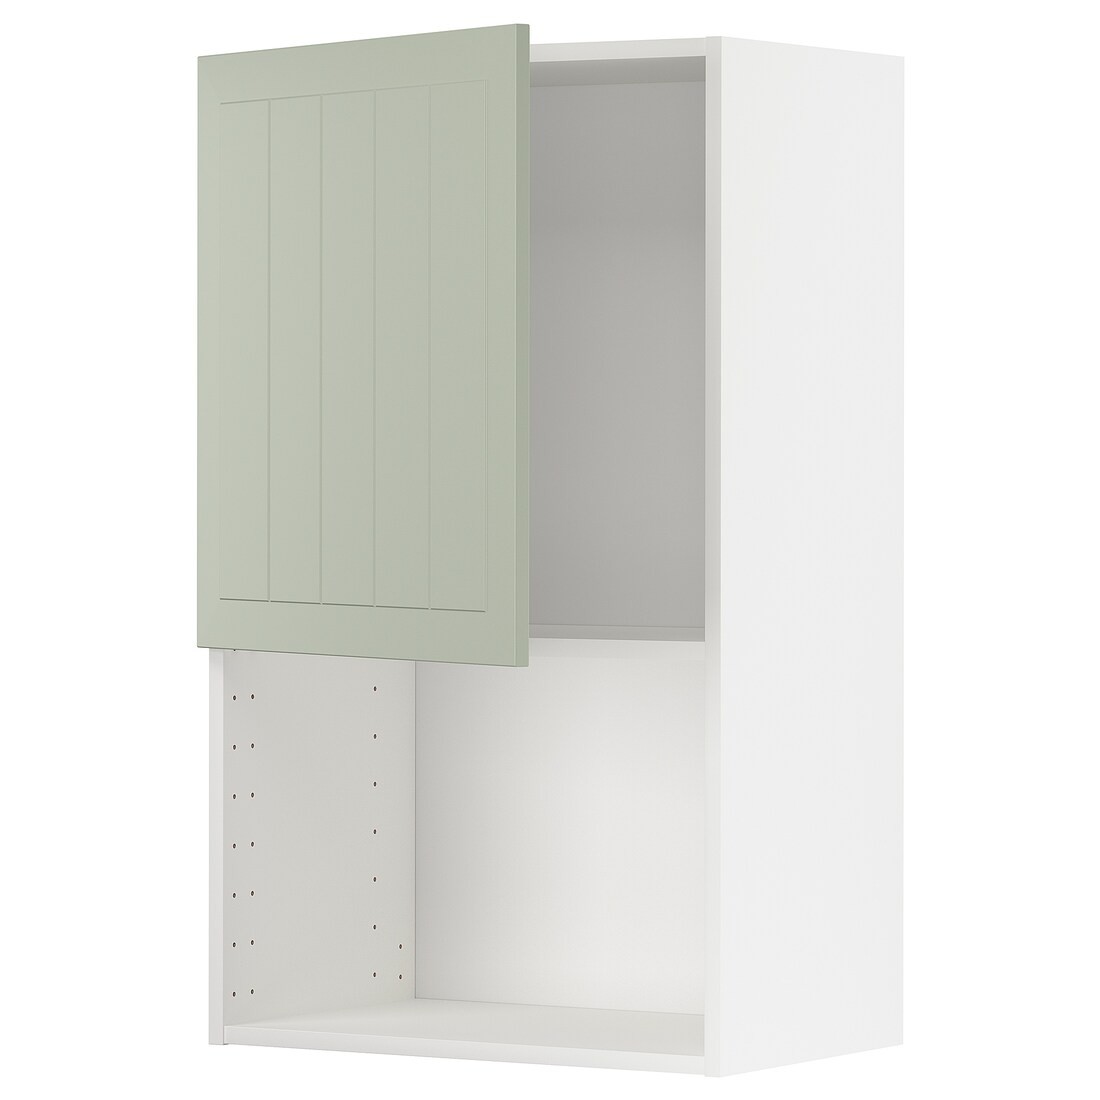 IKEA METOD МЕТОД Навесной шкаф для СВЧ-печи, белый / Stensund светло-зеленый, 60x100 см 69487503 | 694.875.03